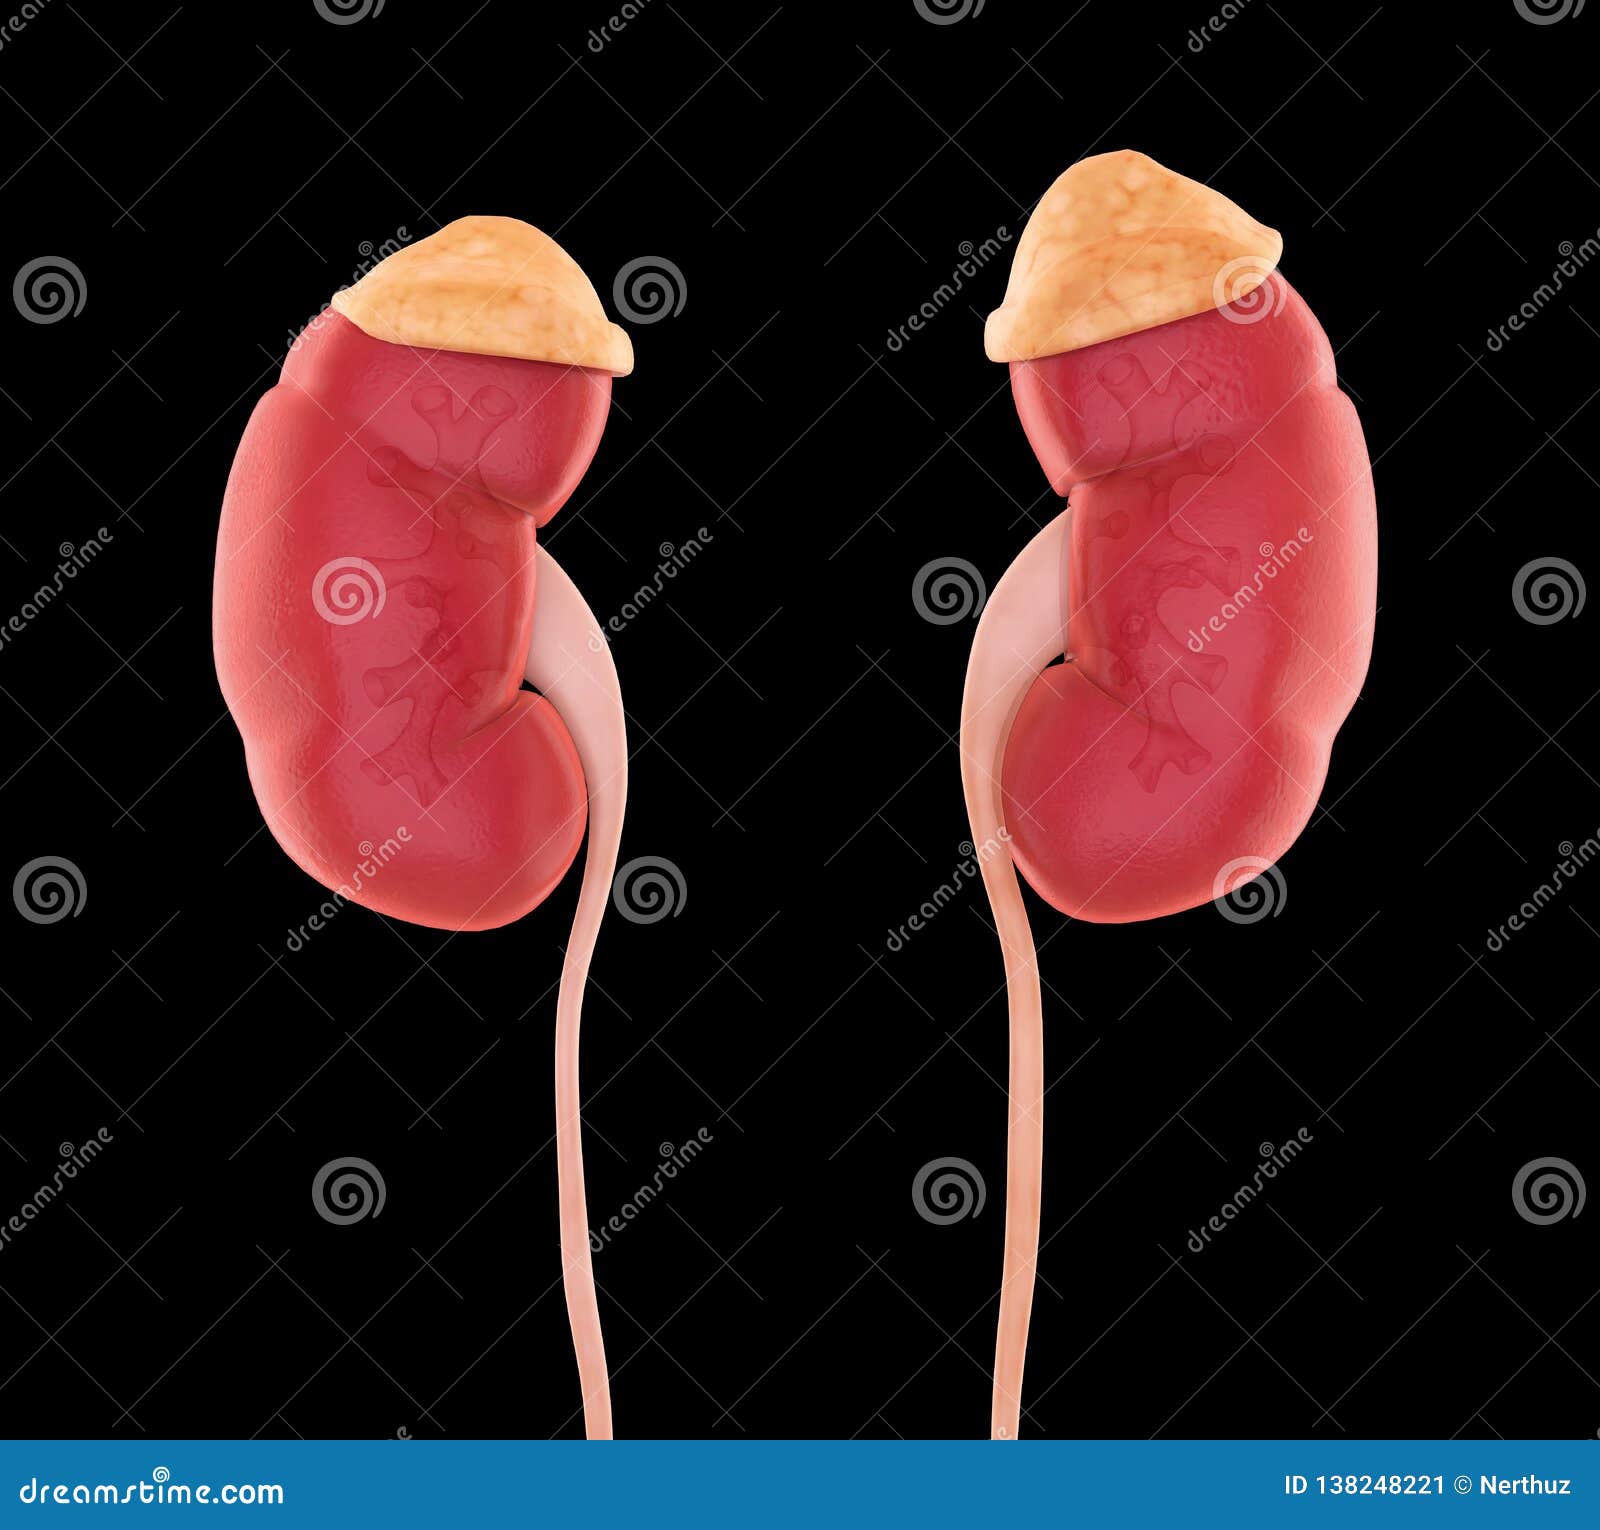 Human Kidneys Anatomy stock illustration. Illustration of patient ...